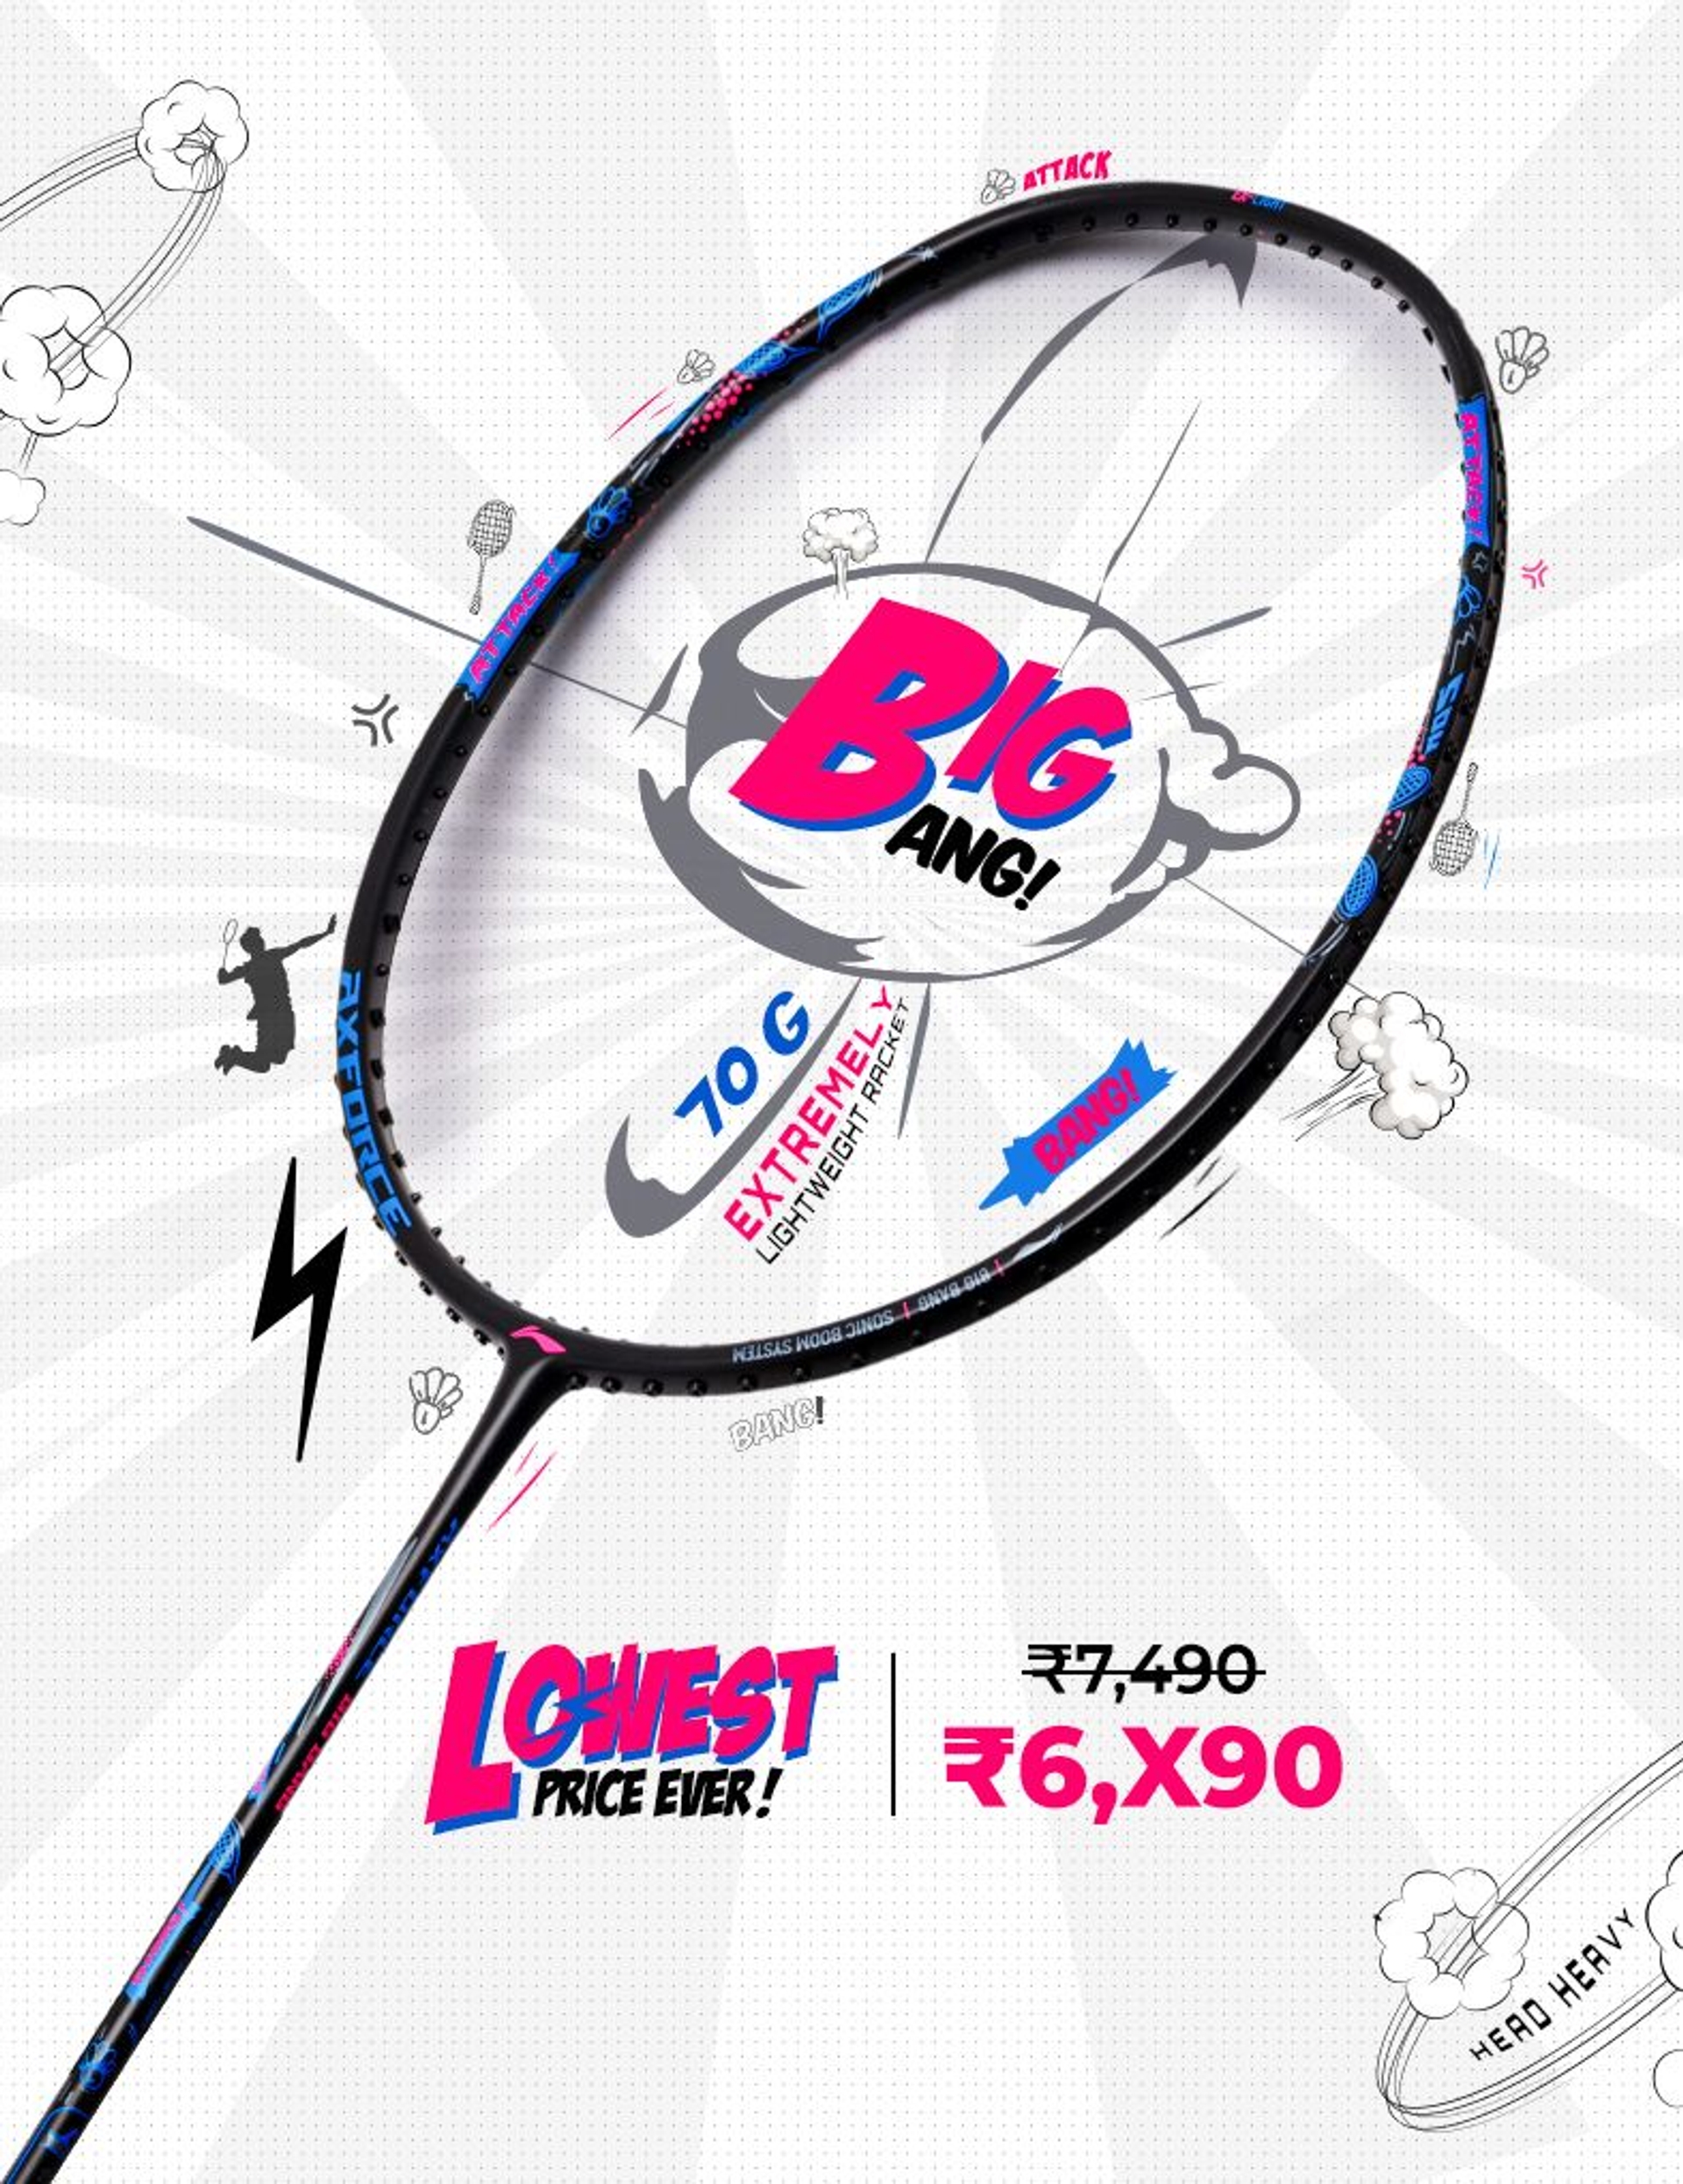 Axforce BigBang - Badminton Racket